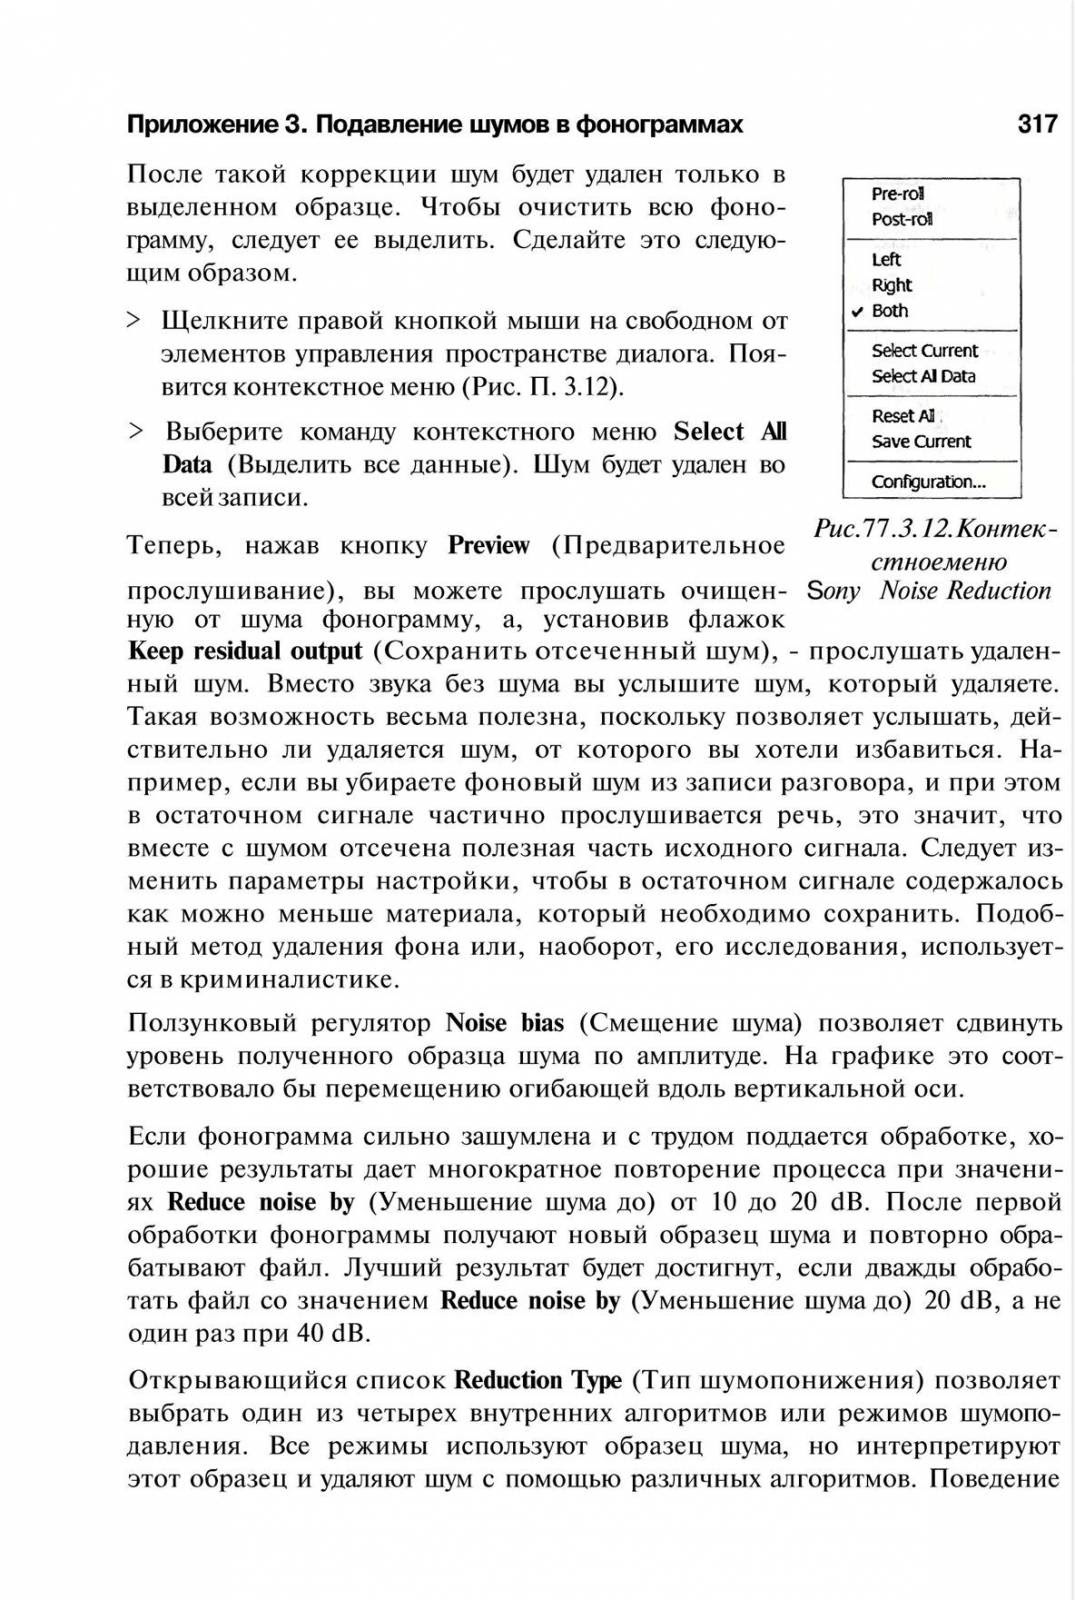 http://redaktori-uroki.3dn.ru/_ph/14/989340474.jpg